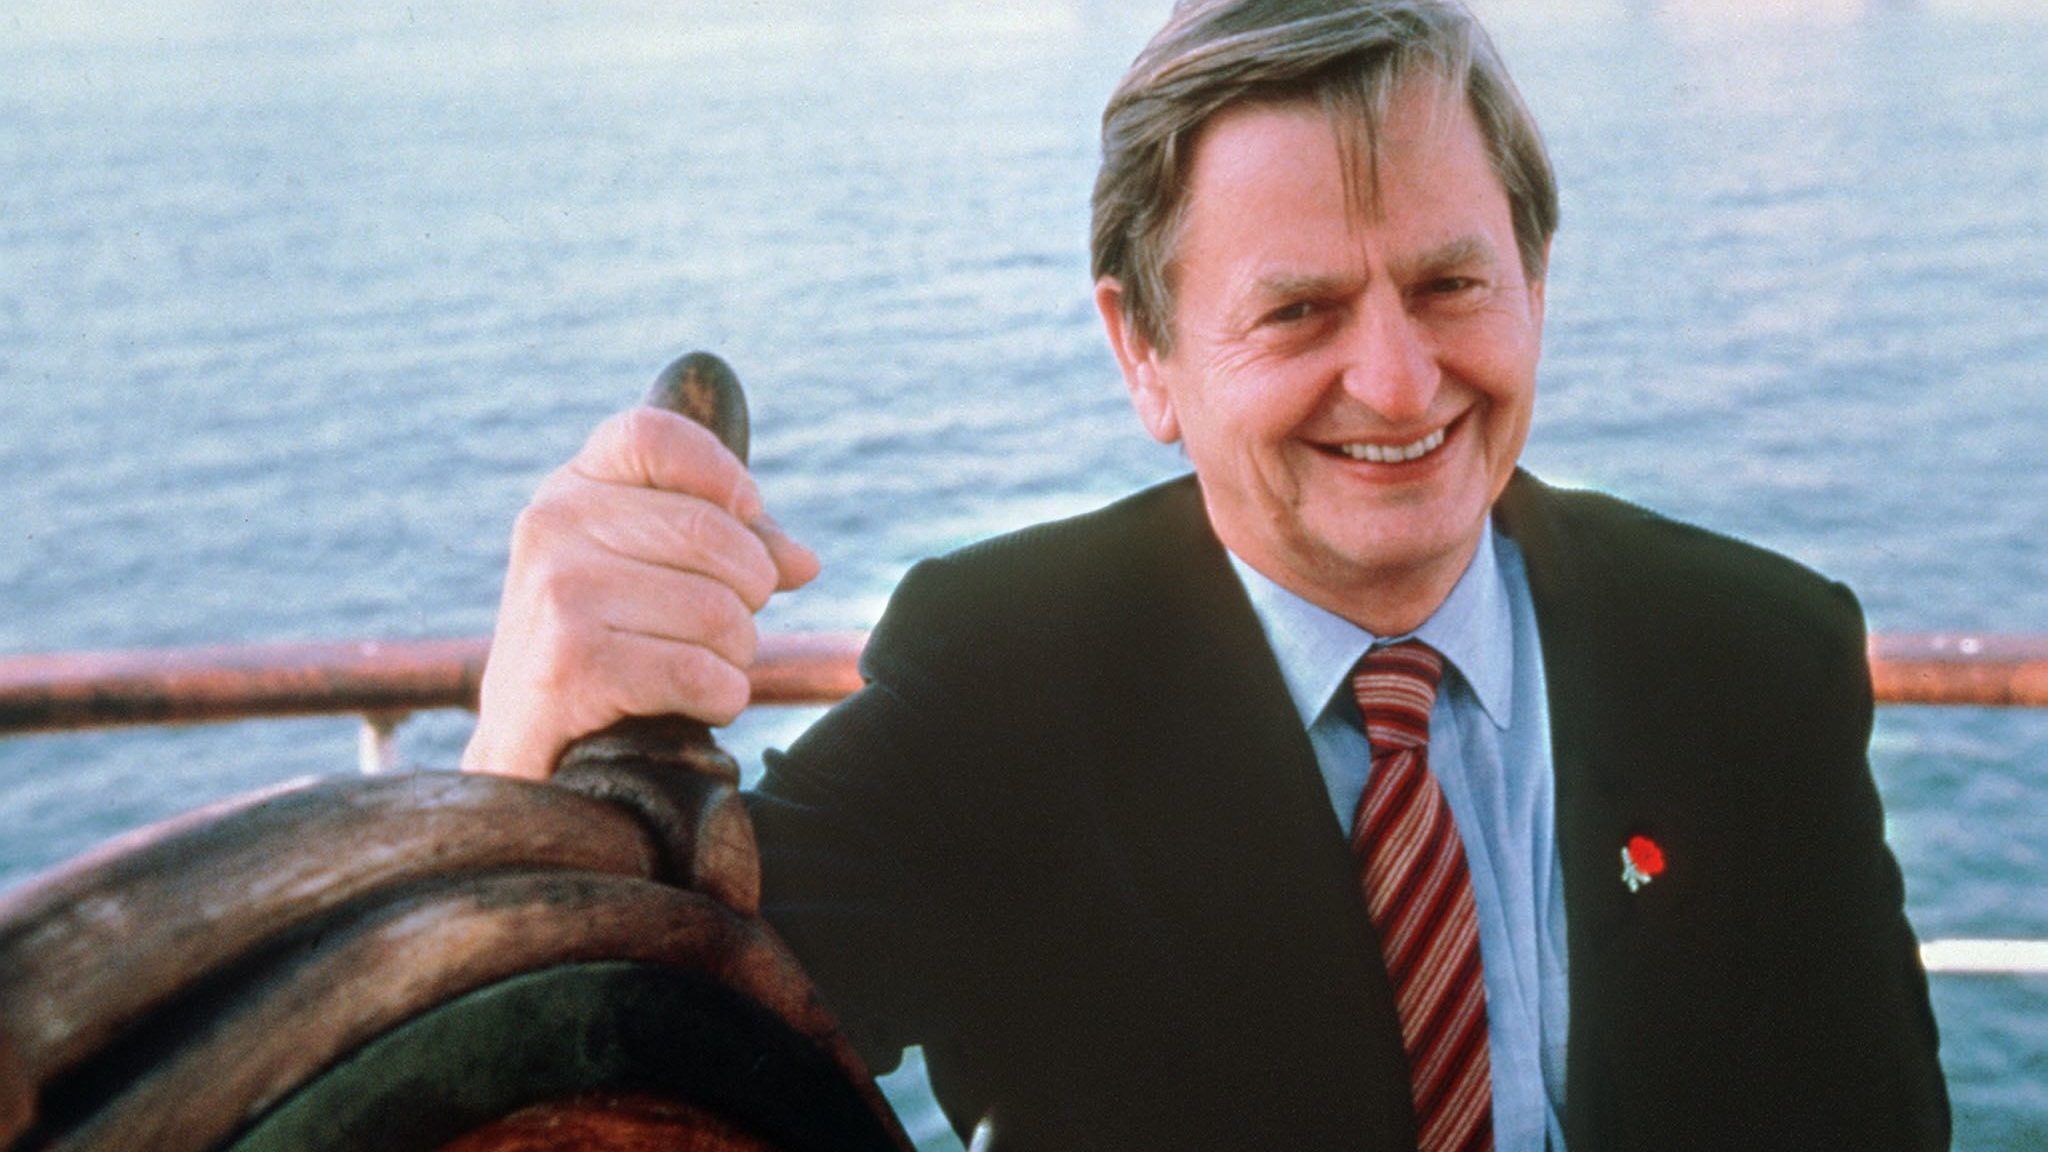 Svédország bejelentést tesz az Olof Palme-gyilkosságról